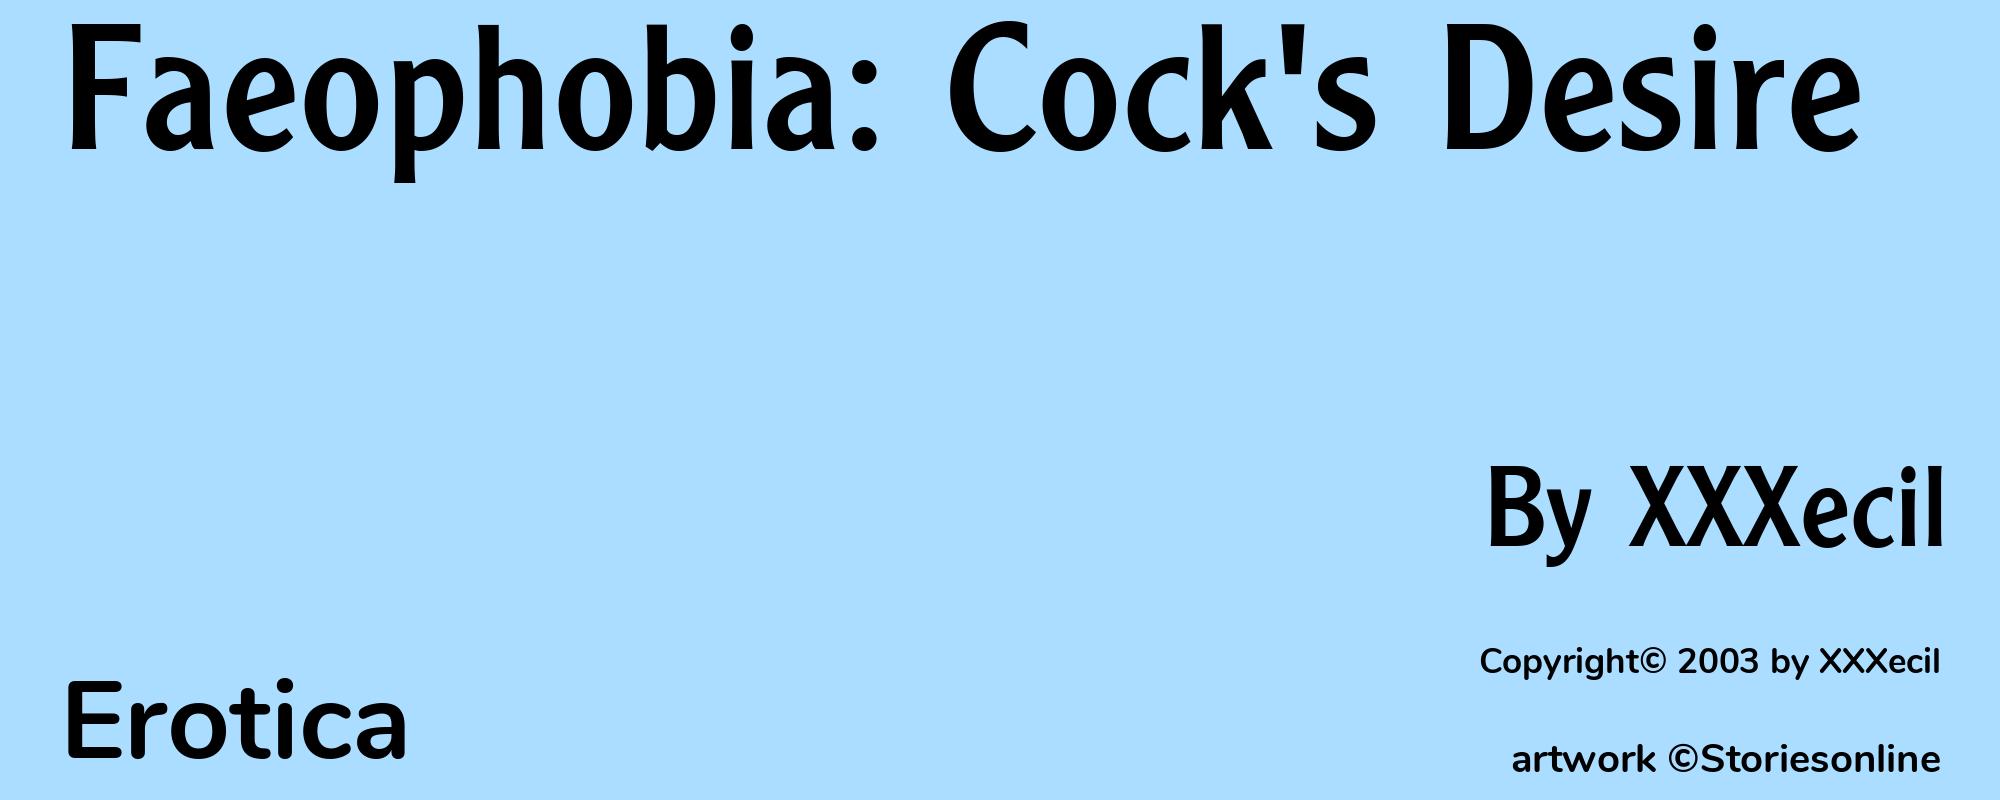 Faeophobia: Cock's Desire - Cover